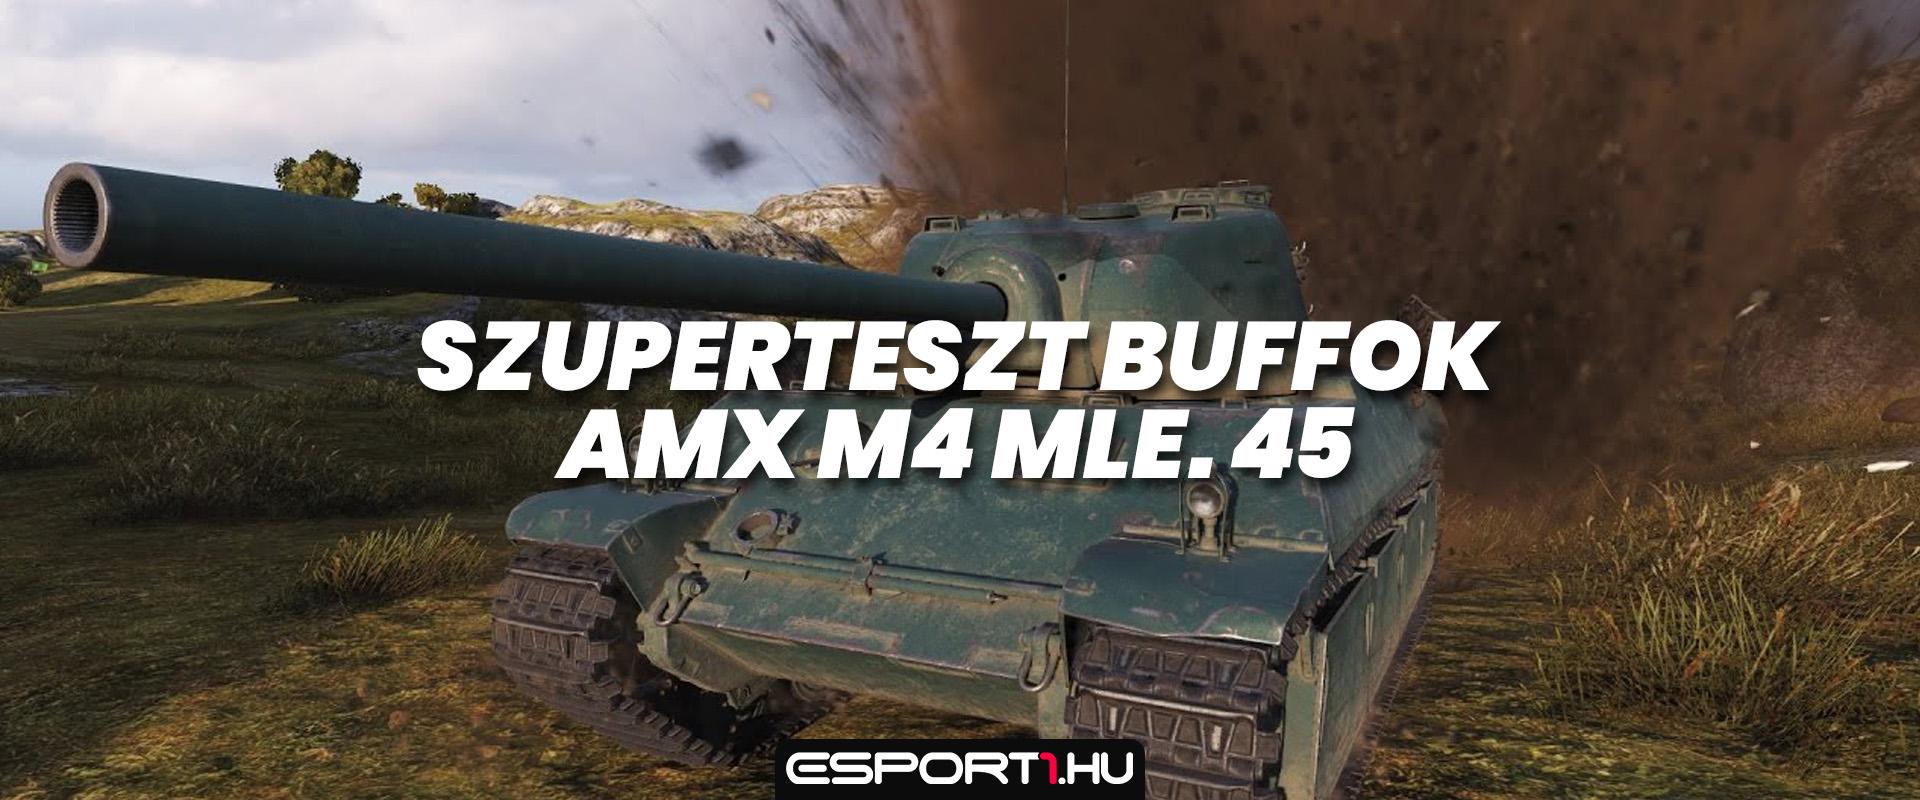 Az AMX M4 mle. 45 és AMX 65T felemelkedése